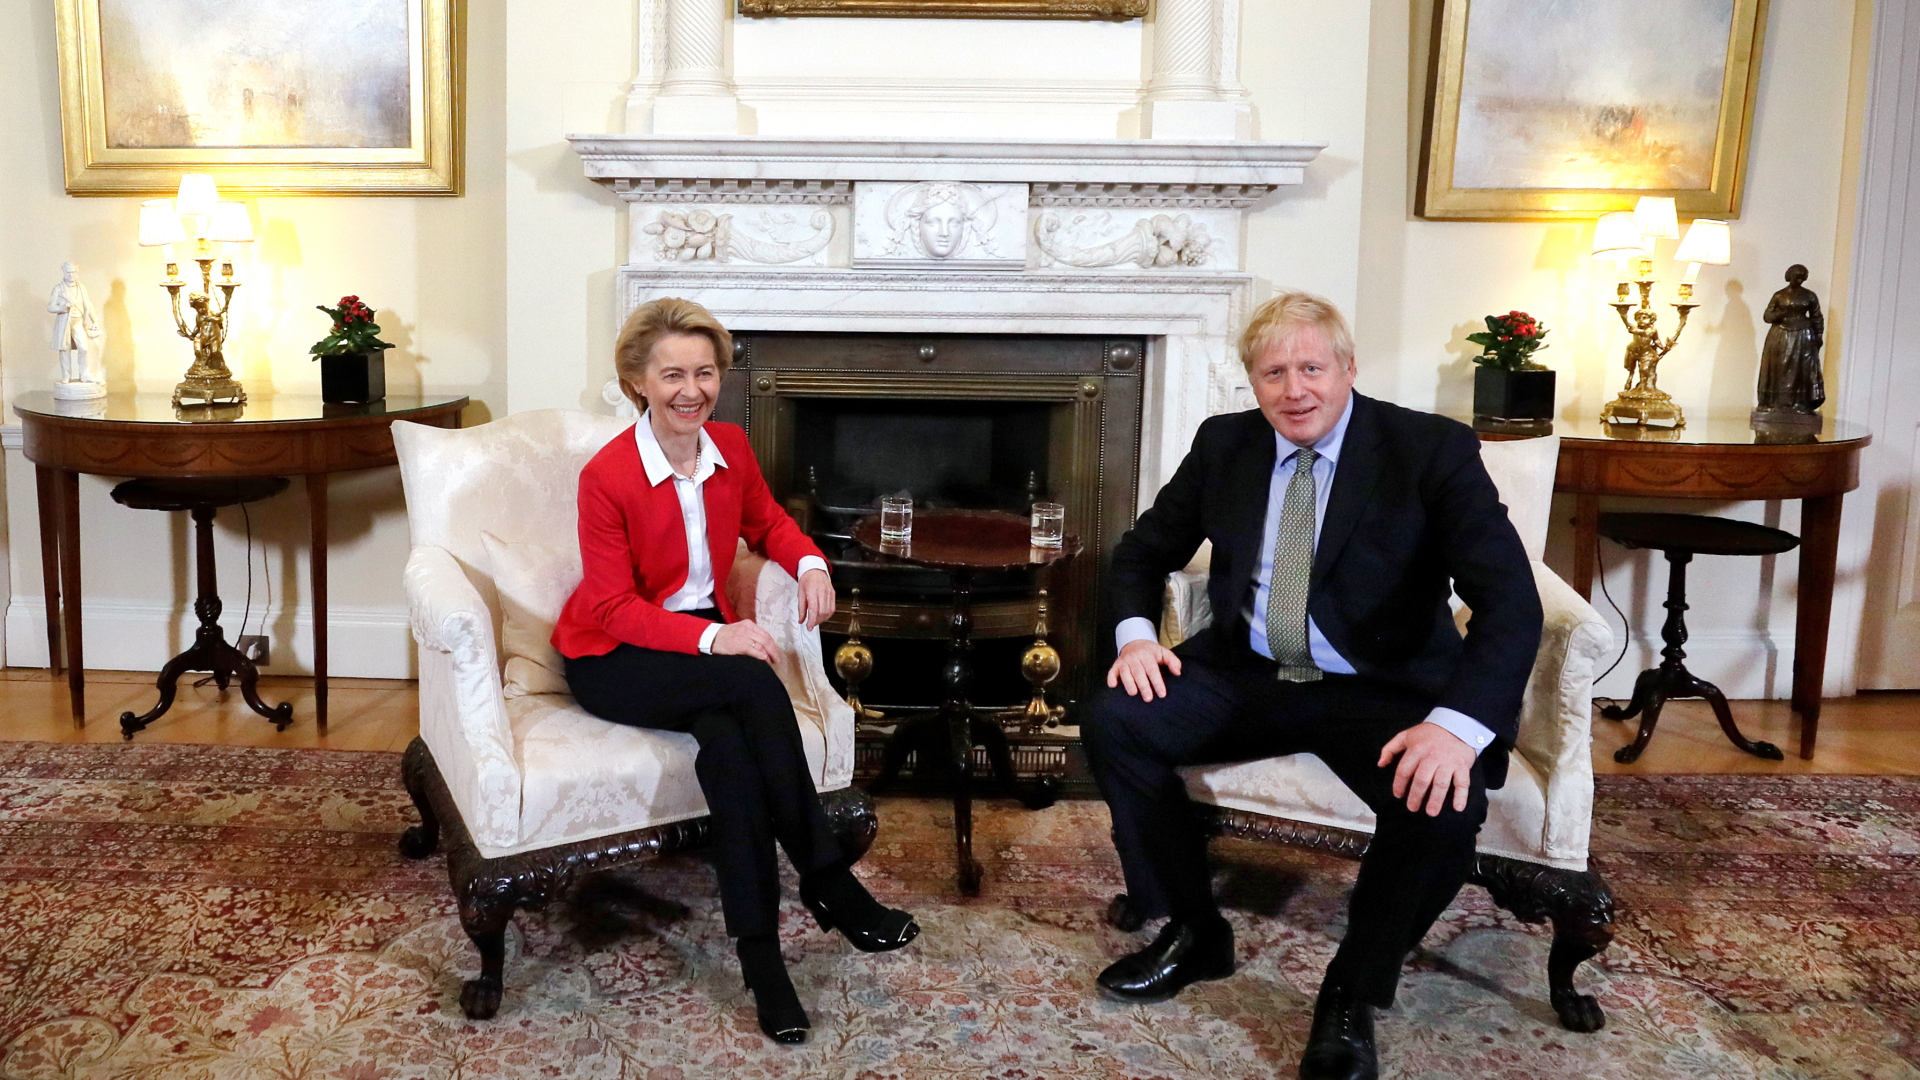 Großbritanniens Premierminister Boris Johnson und Ursula von der Leyen, die Präsidentin der Europäischen Kommission, bei ihrem Treffen in der Downing Street 10. | dpa